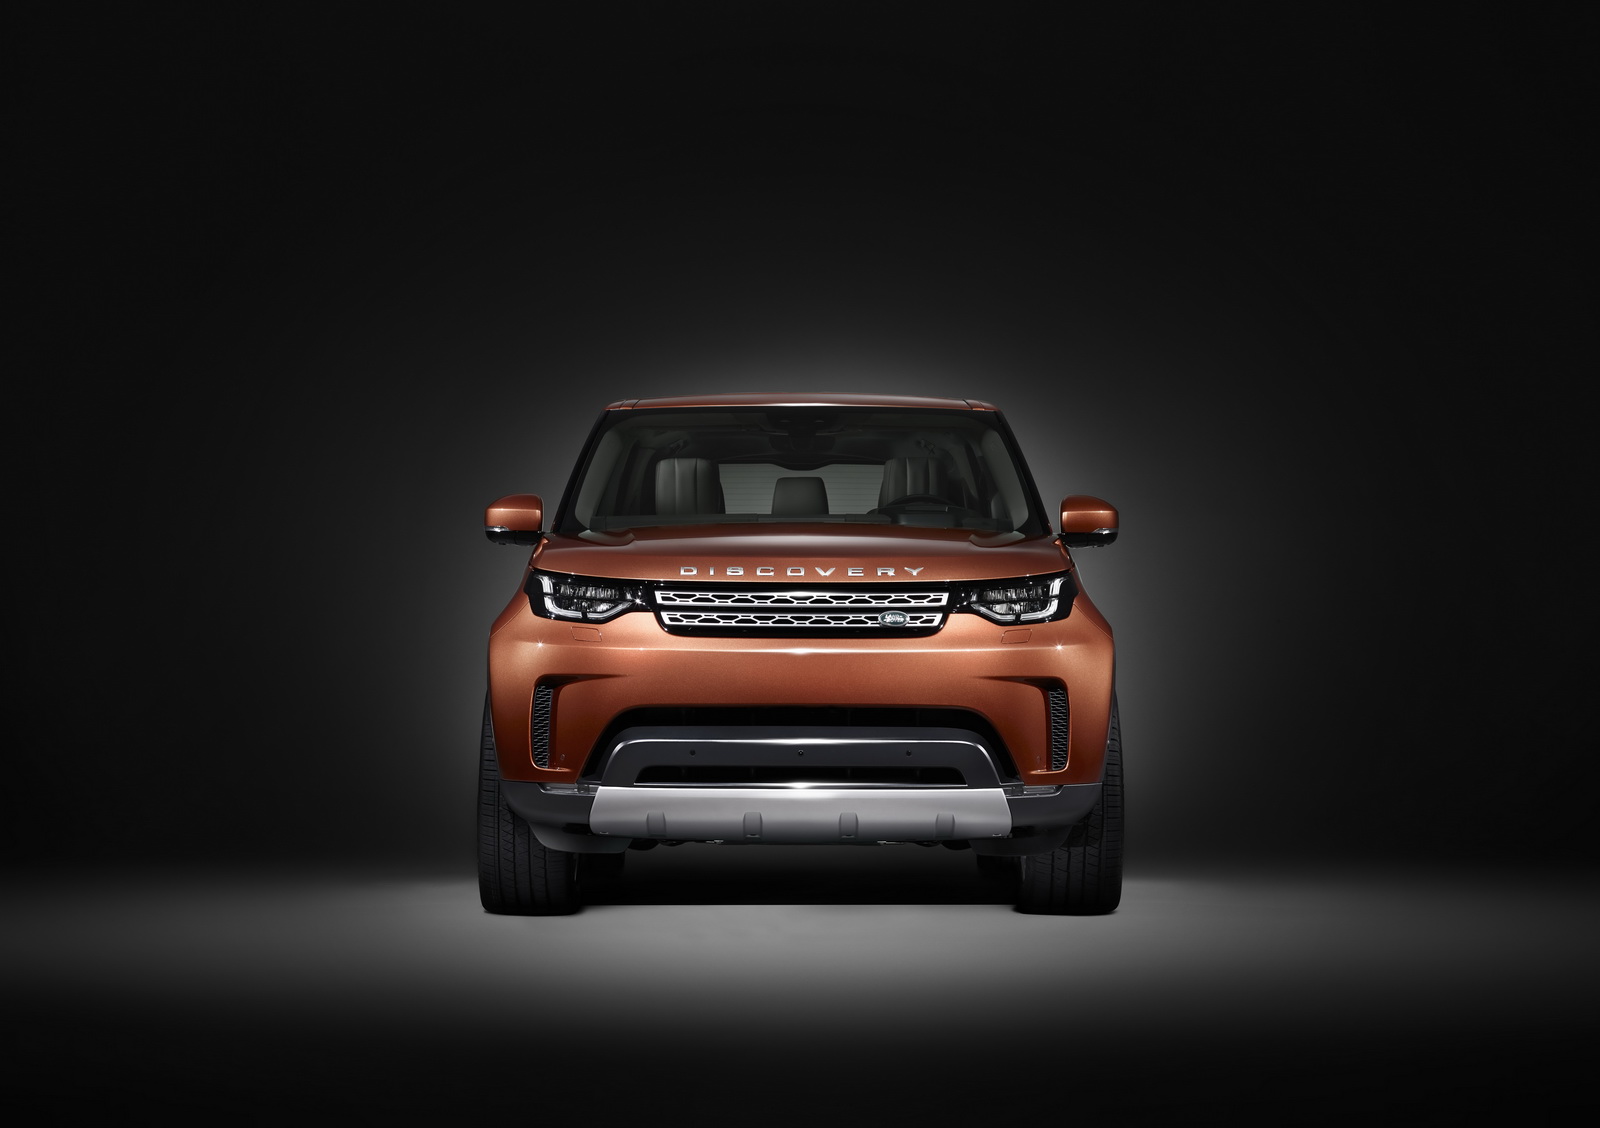 “صور تشويقية” لاند روفر تكشف عن وجه ديسكفري 2017 قبل تدشينها في باريس Land Rover Discovery